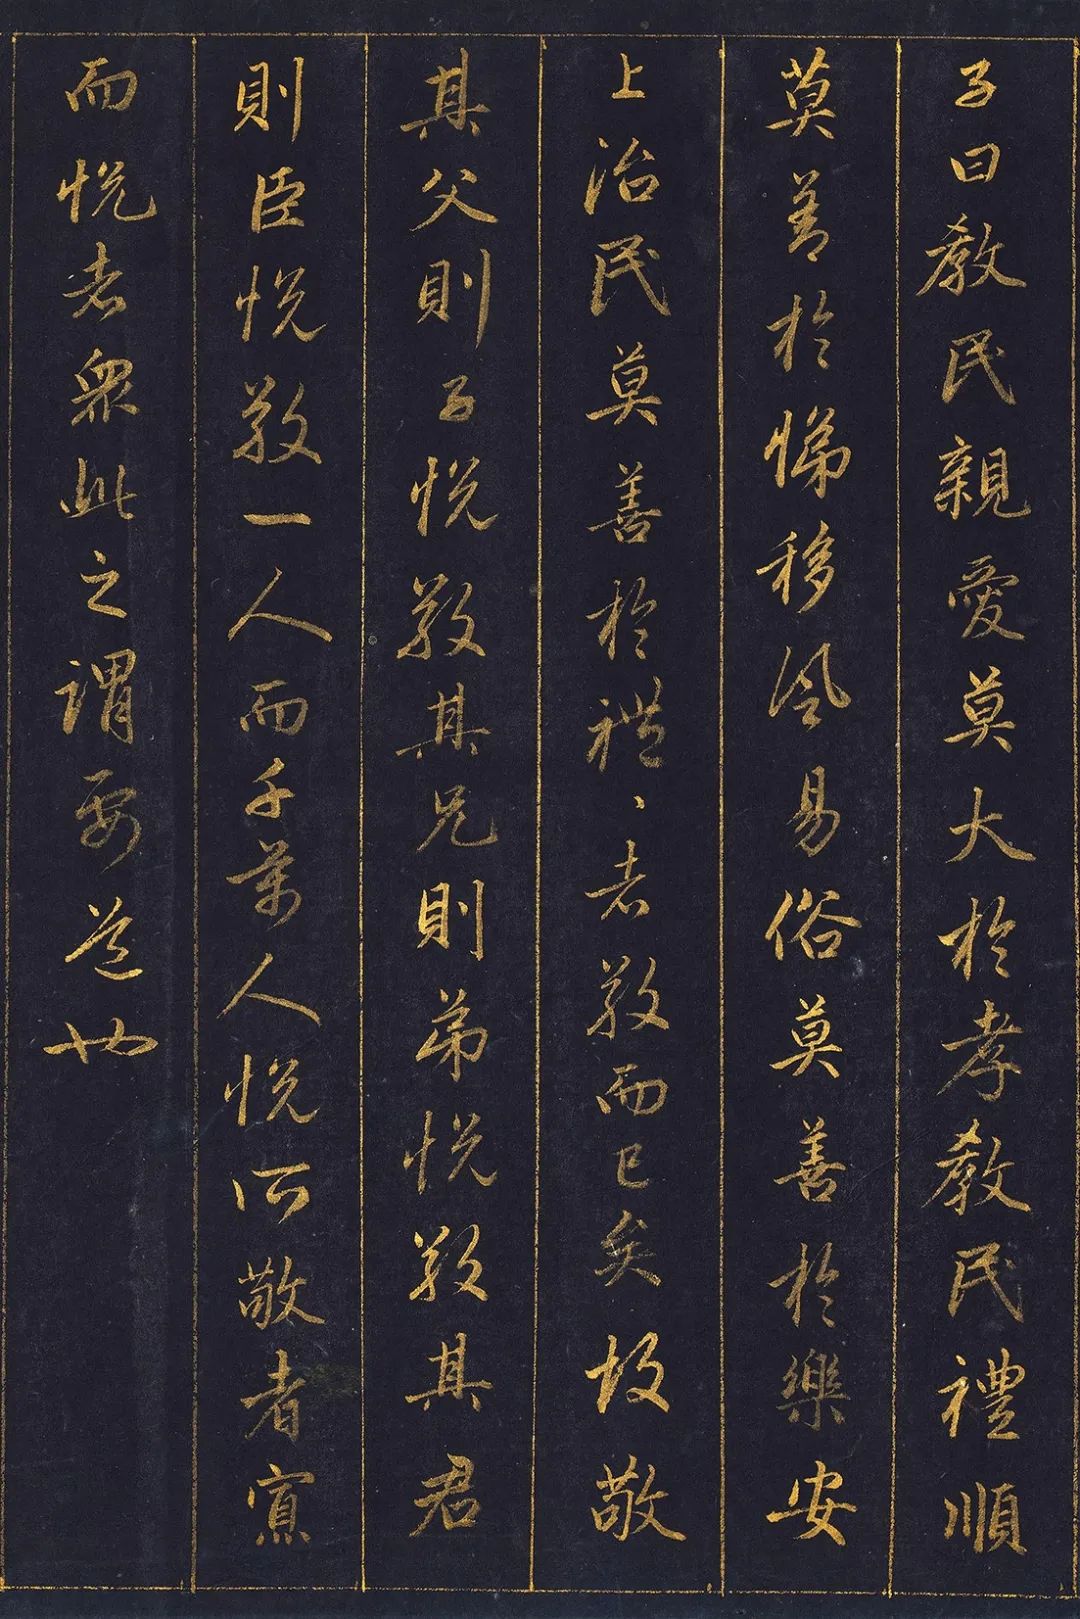 赵孟頫的泥金《孝经卷》,用10两黄金书写,堪称一字千金的典范